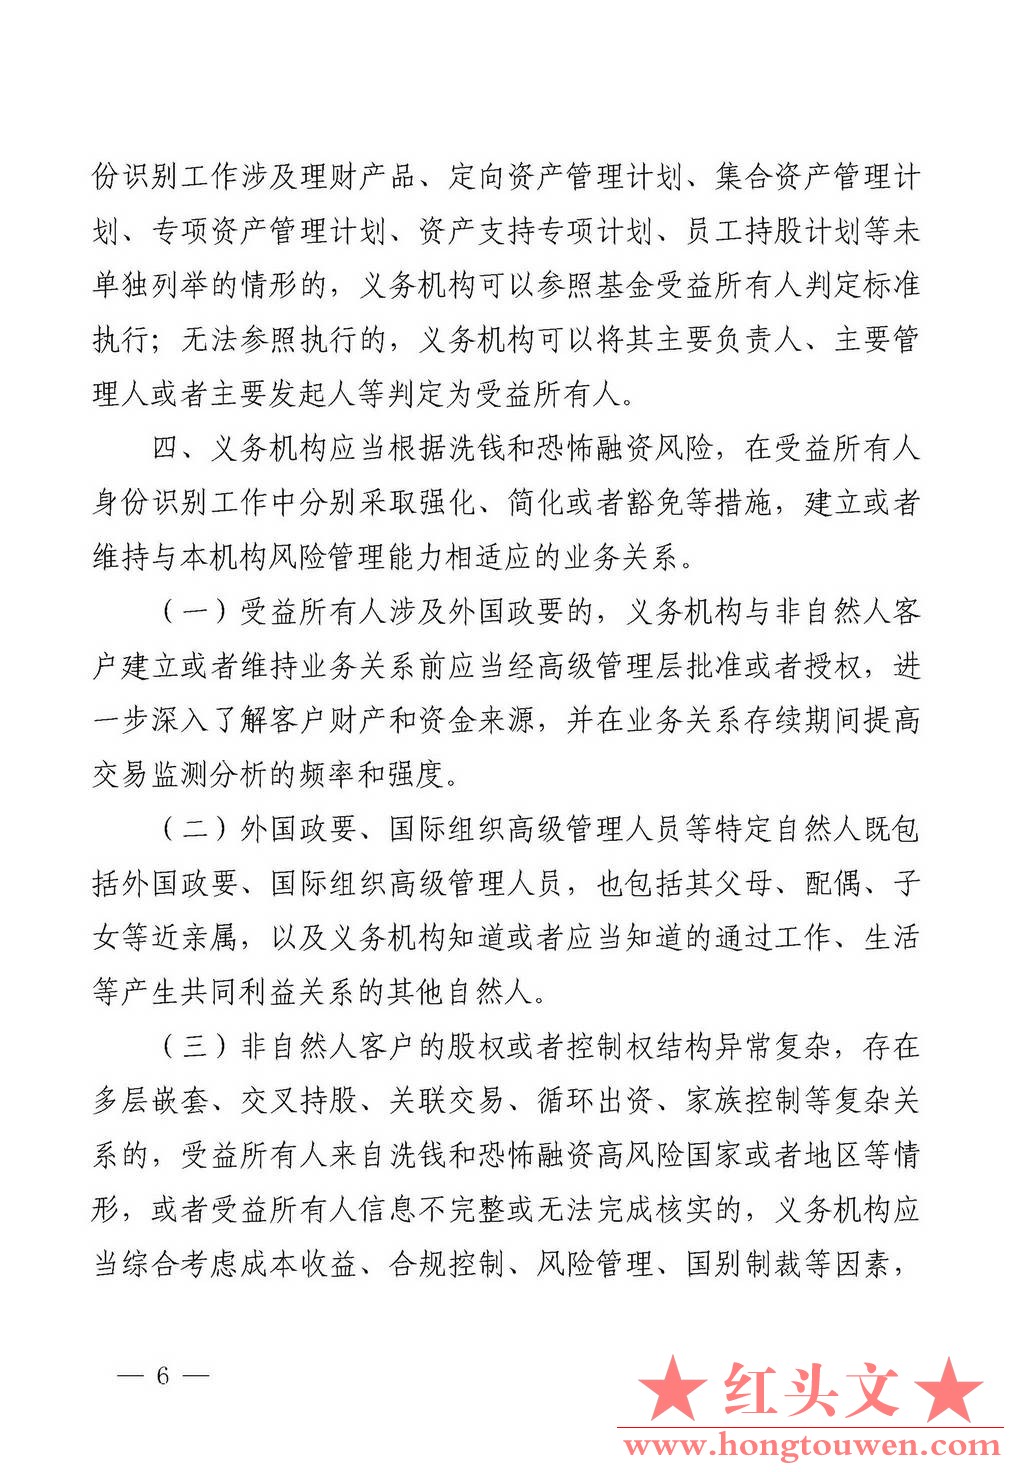 银发[2018]164号-中国人民银行关于进一步做好受益所有人身份识别工作有关问题的通知_.jpg